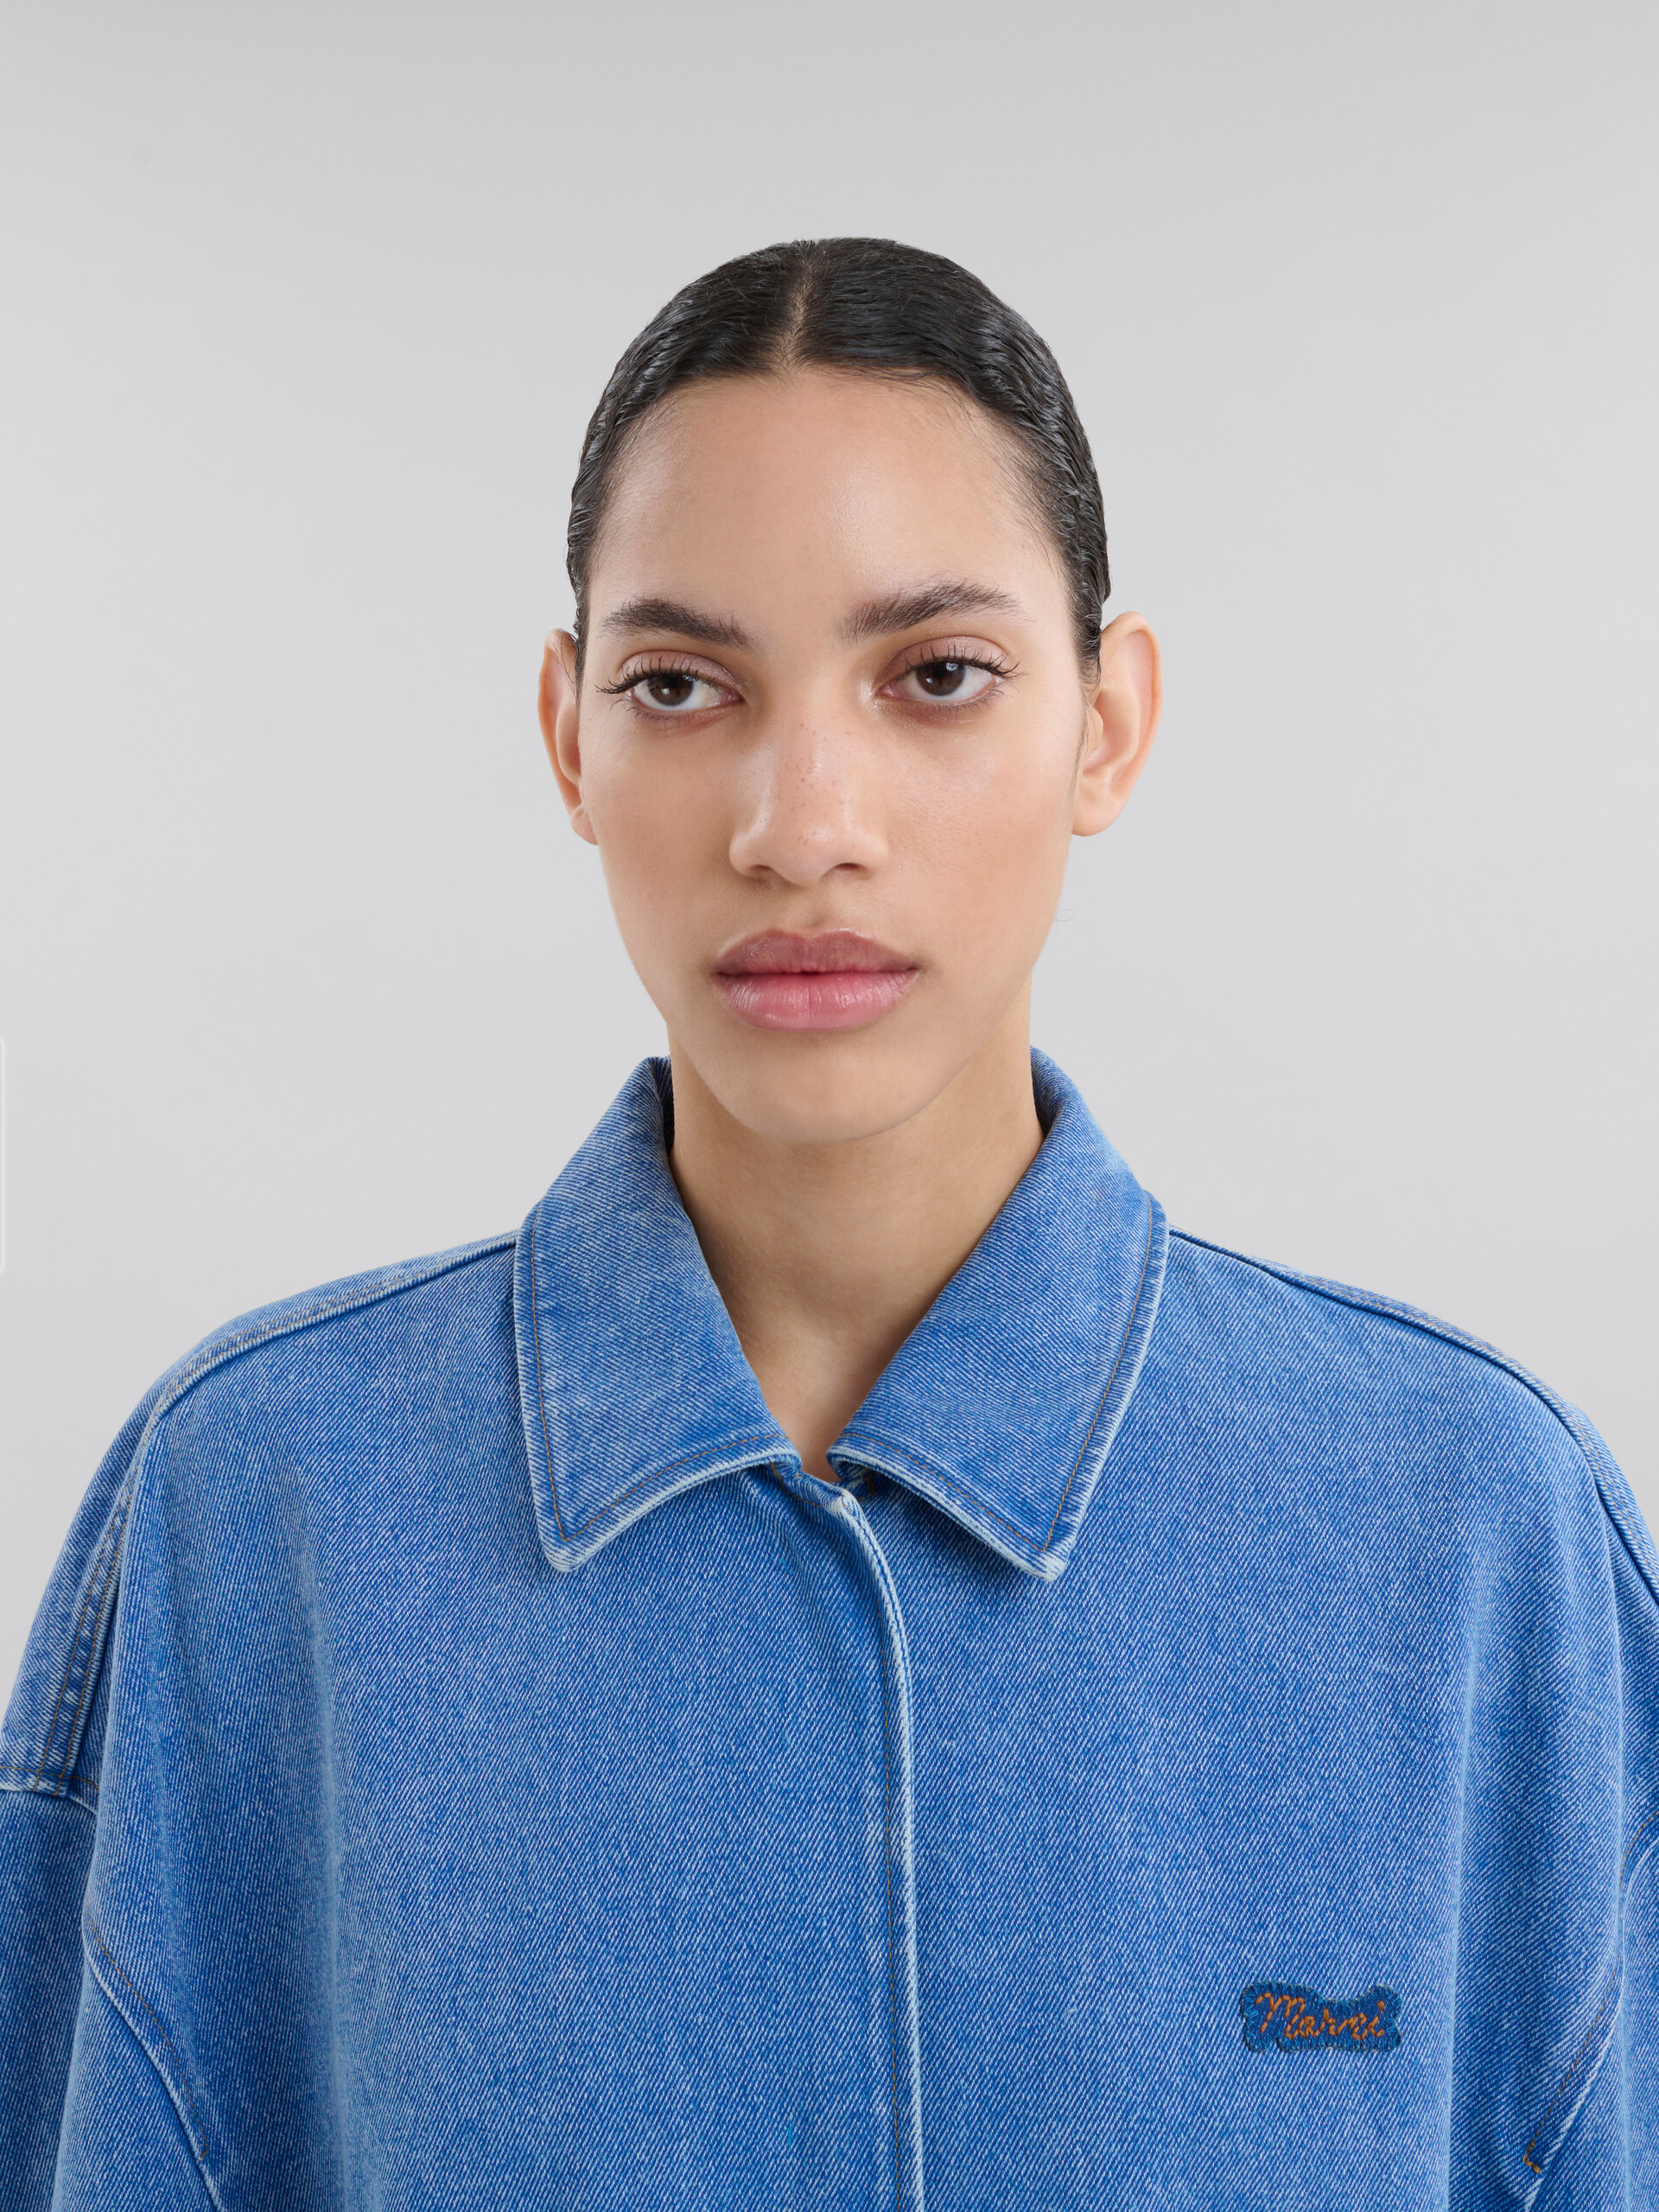 Veste en denim biologique bleu avec patch effet raccommodé Marni - Manteaux - Image 4